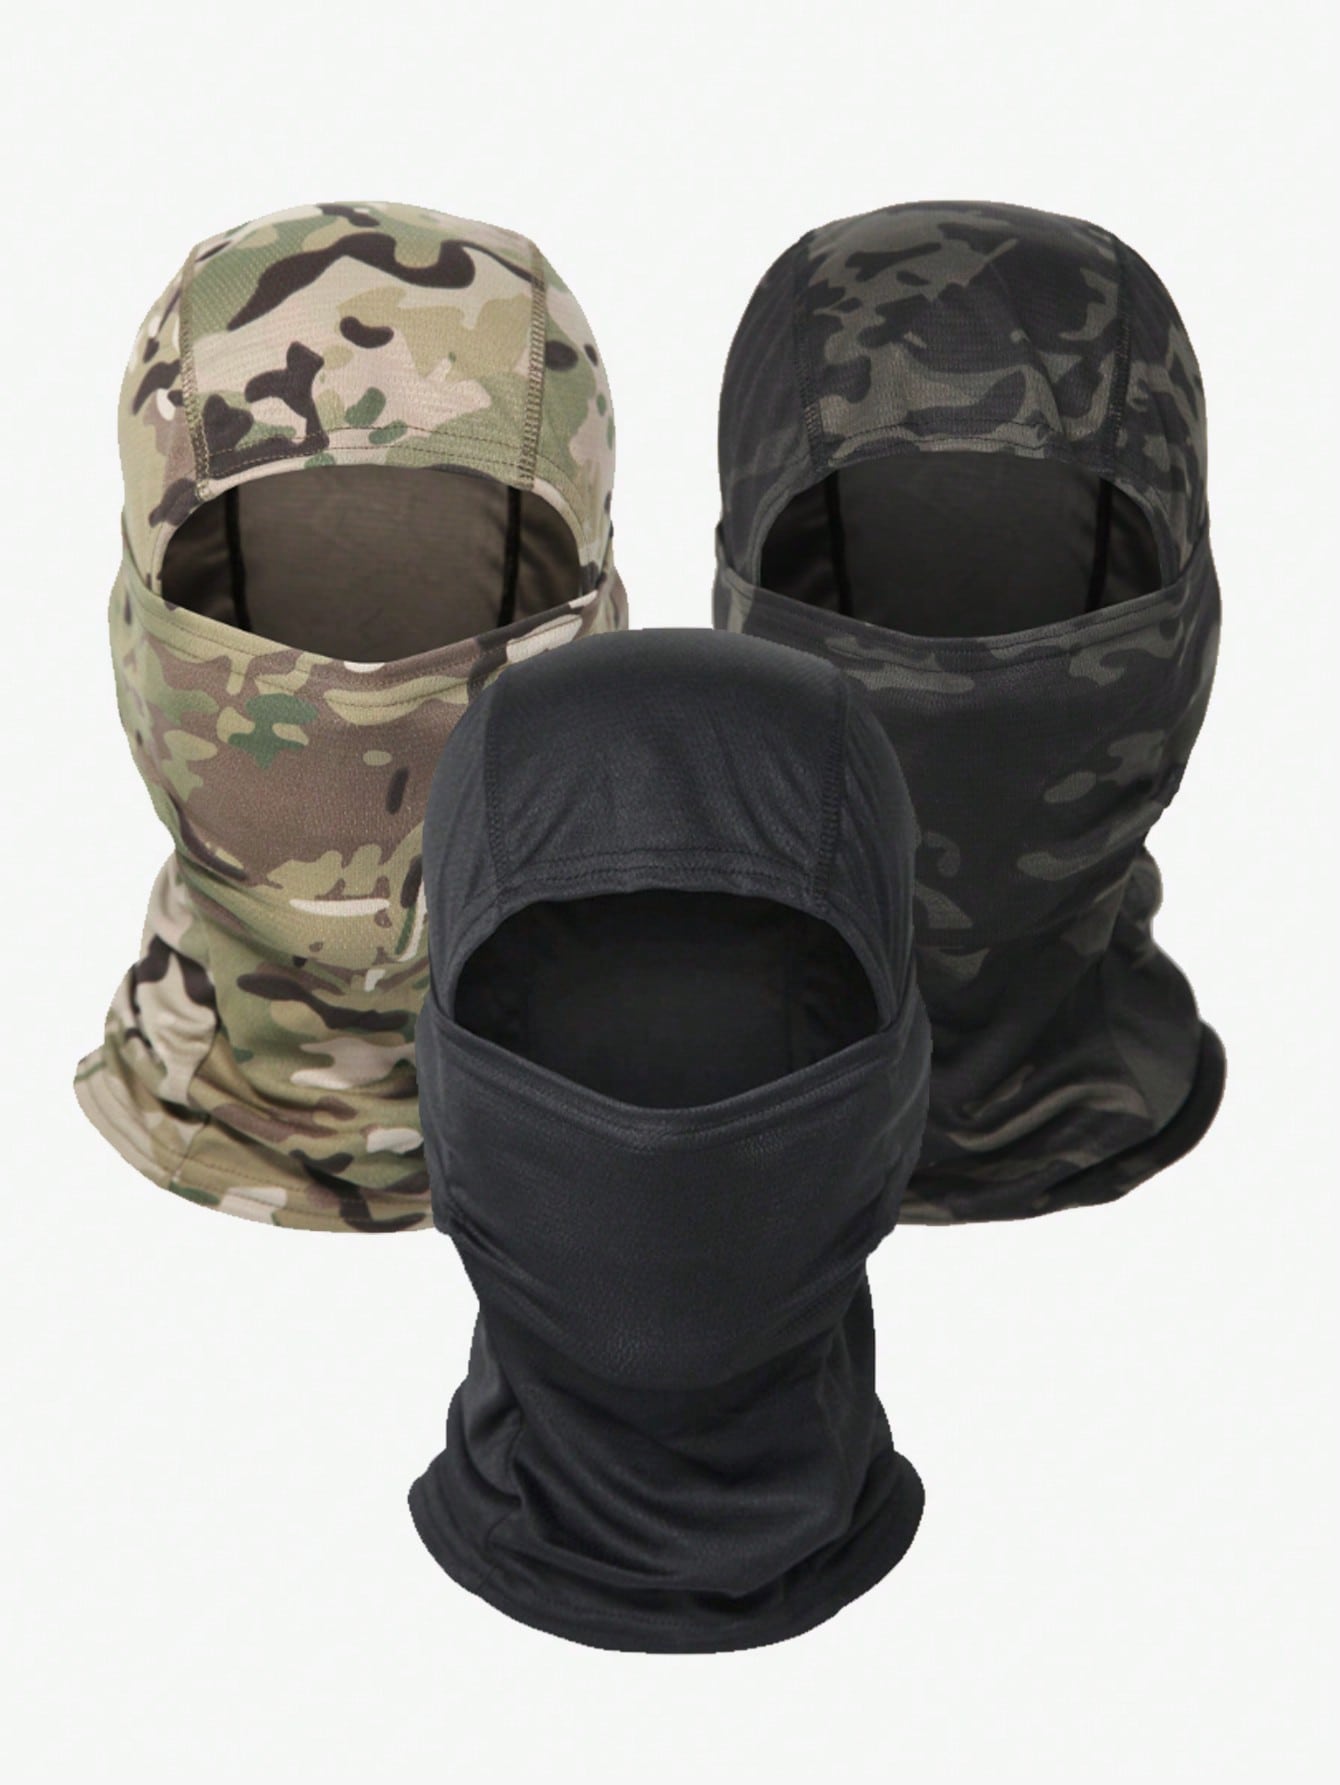 3 шт. защита от ультрафиолета, многоцветный мотоциклетная маска балаклава флисовая теплая лыжная маска с защитой от ветра для мужчин и женщин